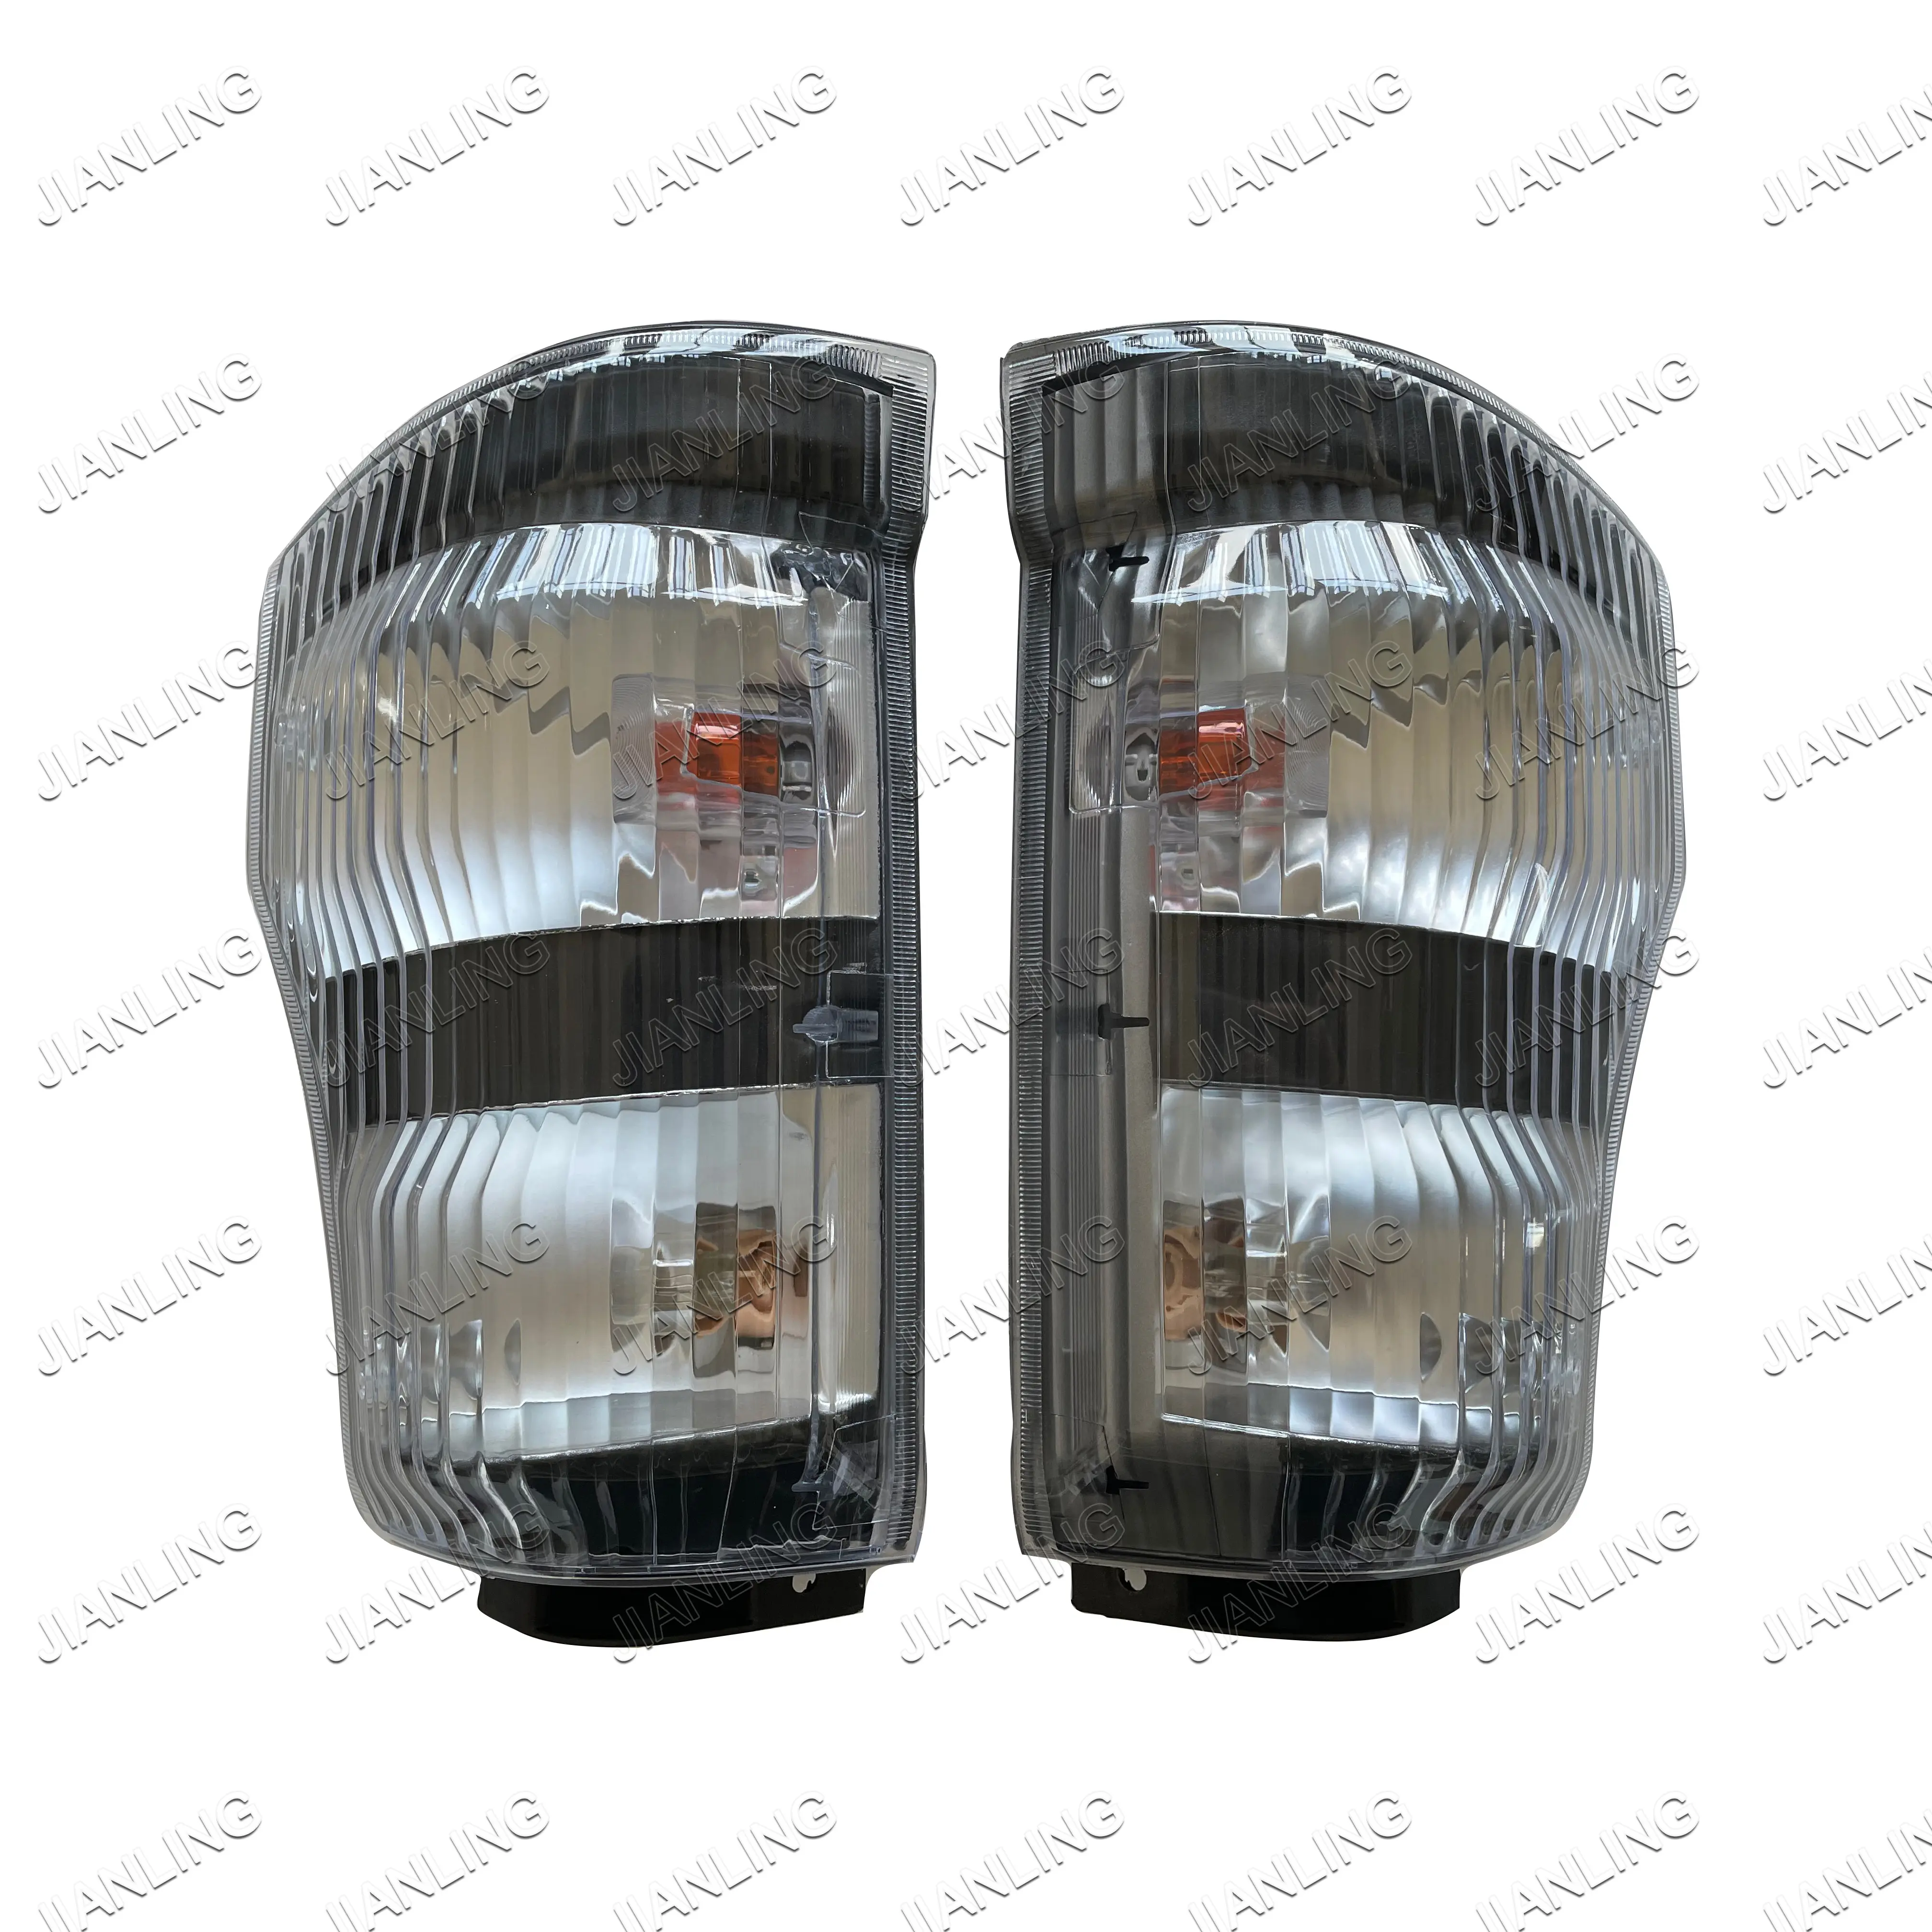 Systèmes d'éclairage automobile accessoires de voiture Isuzu 600p camion halogène lampe d'angle voiture lumières OEM R 8-98010891-0 L 8-98010892-0